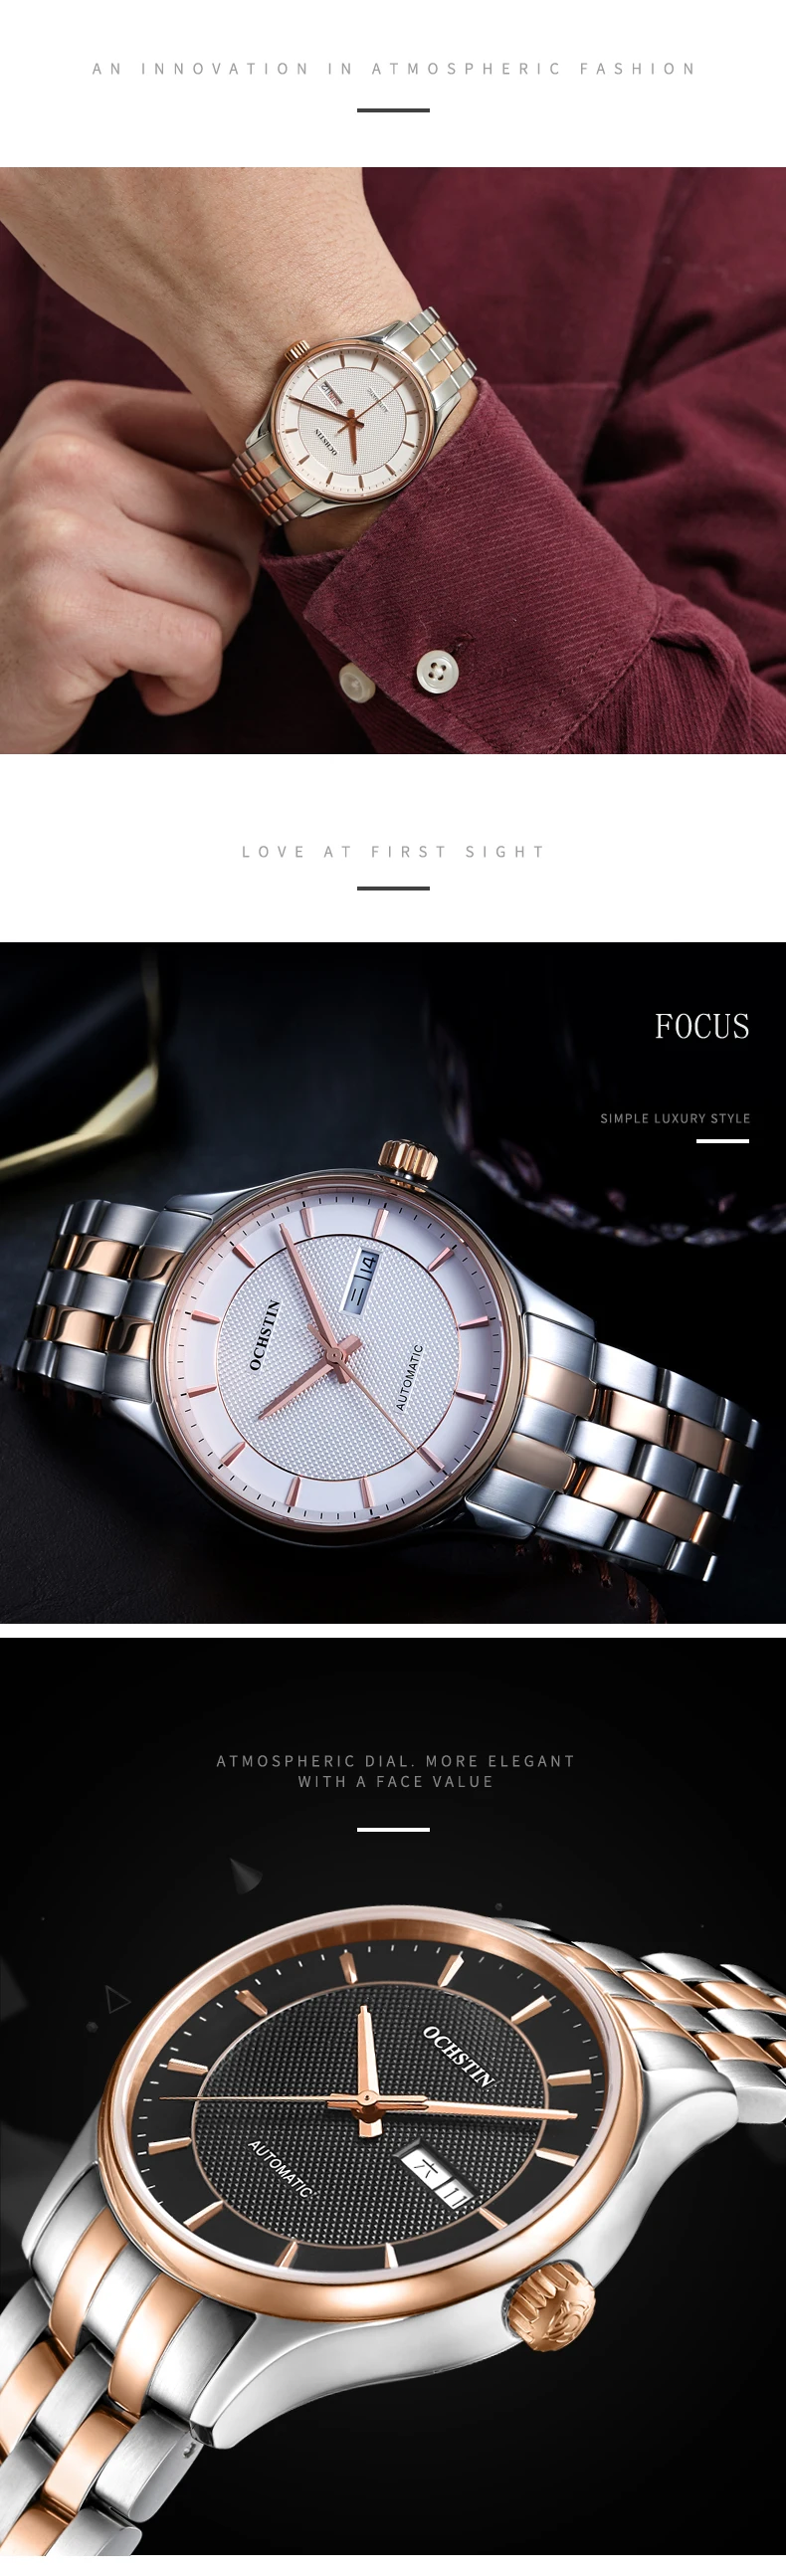 OCHSTIN Топ Luxe бренд 2019 пара влюбленных автоматические механические часы пара тренд мужчины и женщины подарок наручные часы для пар